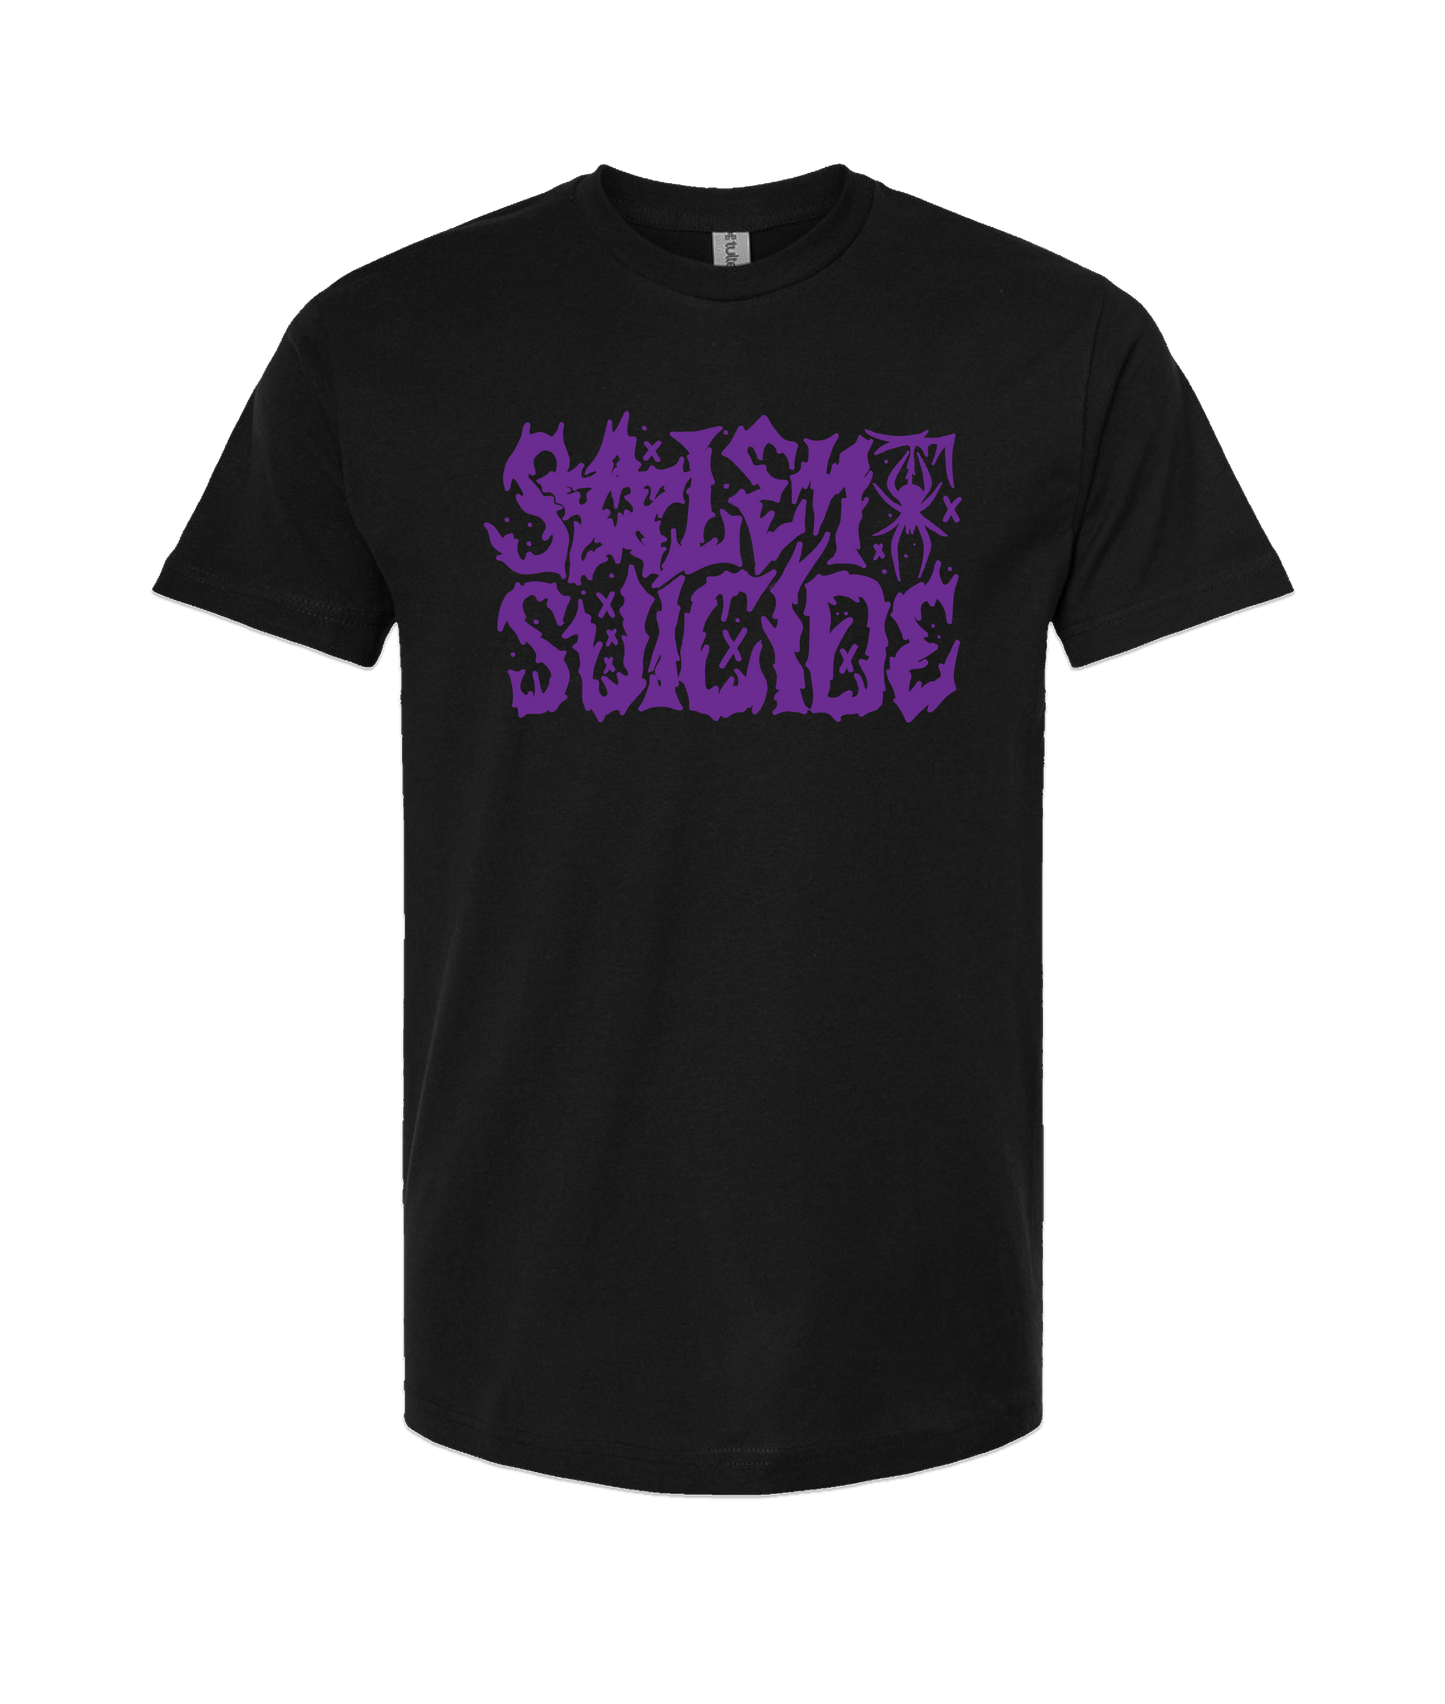 Salem Suicide - Logo Purple - Black T-Shirt